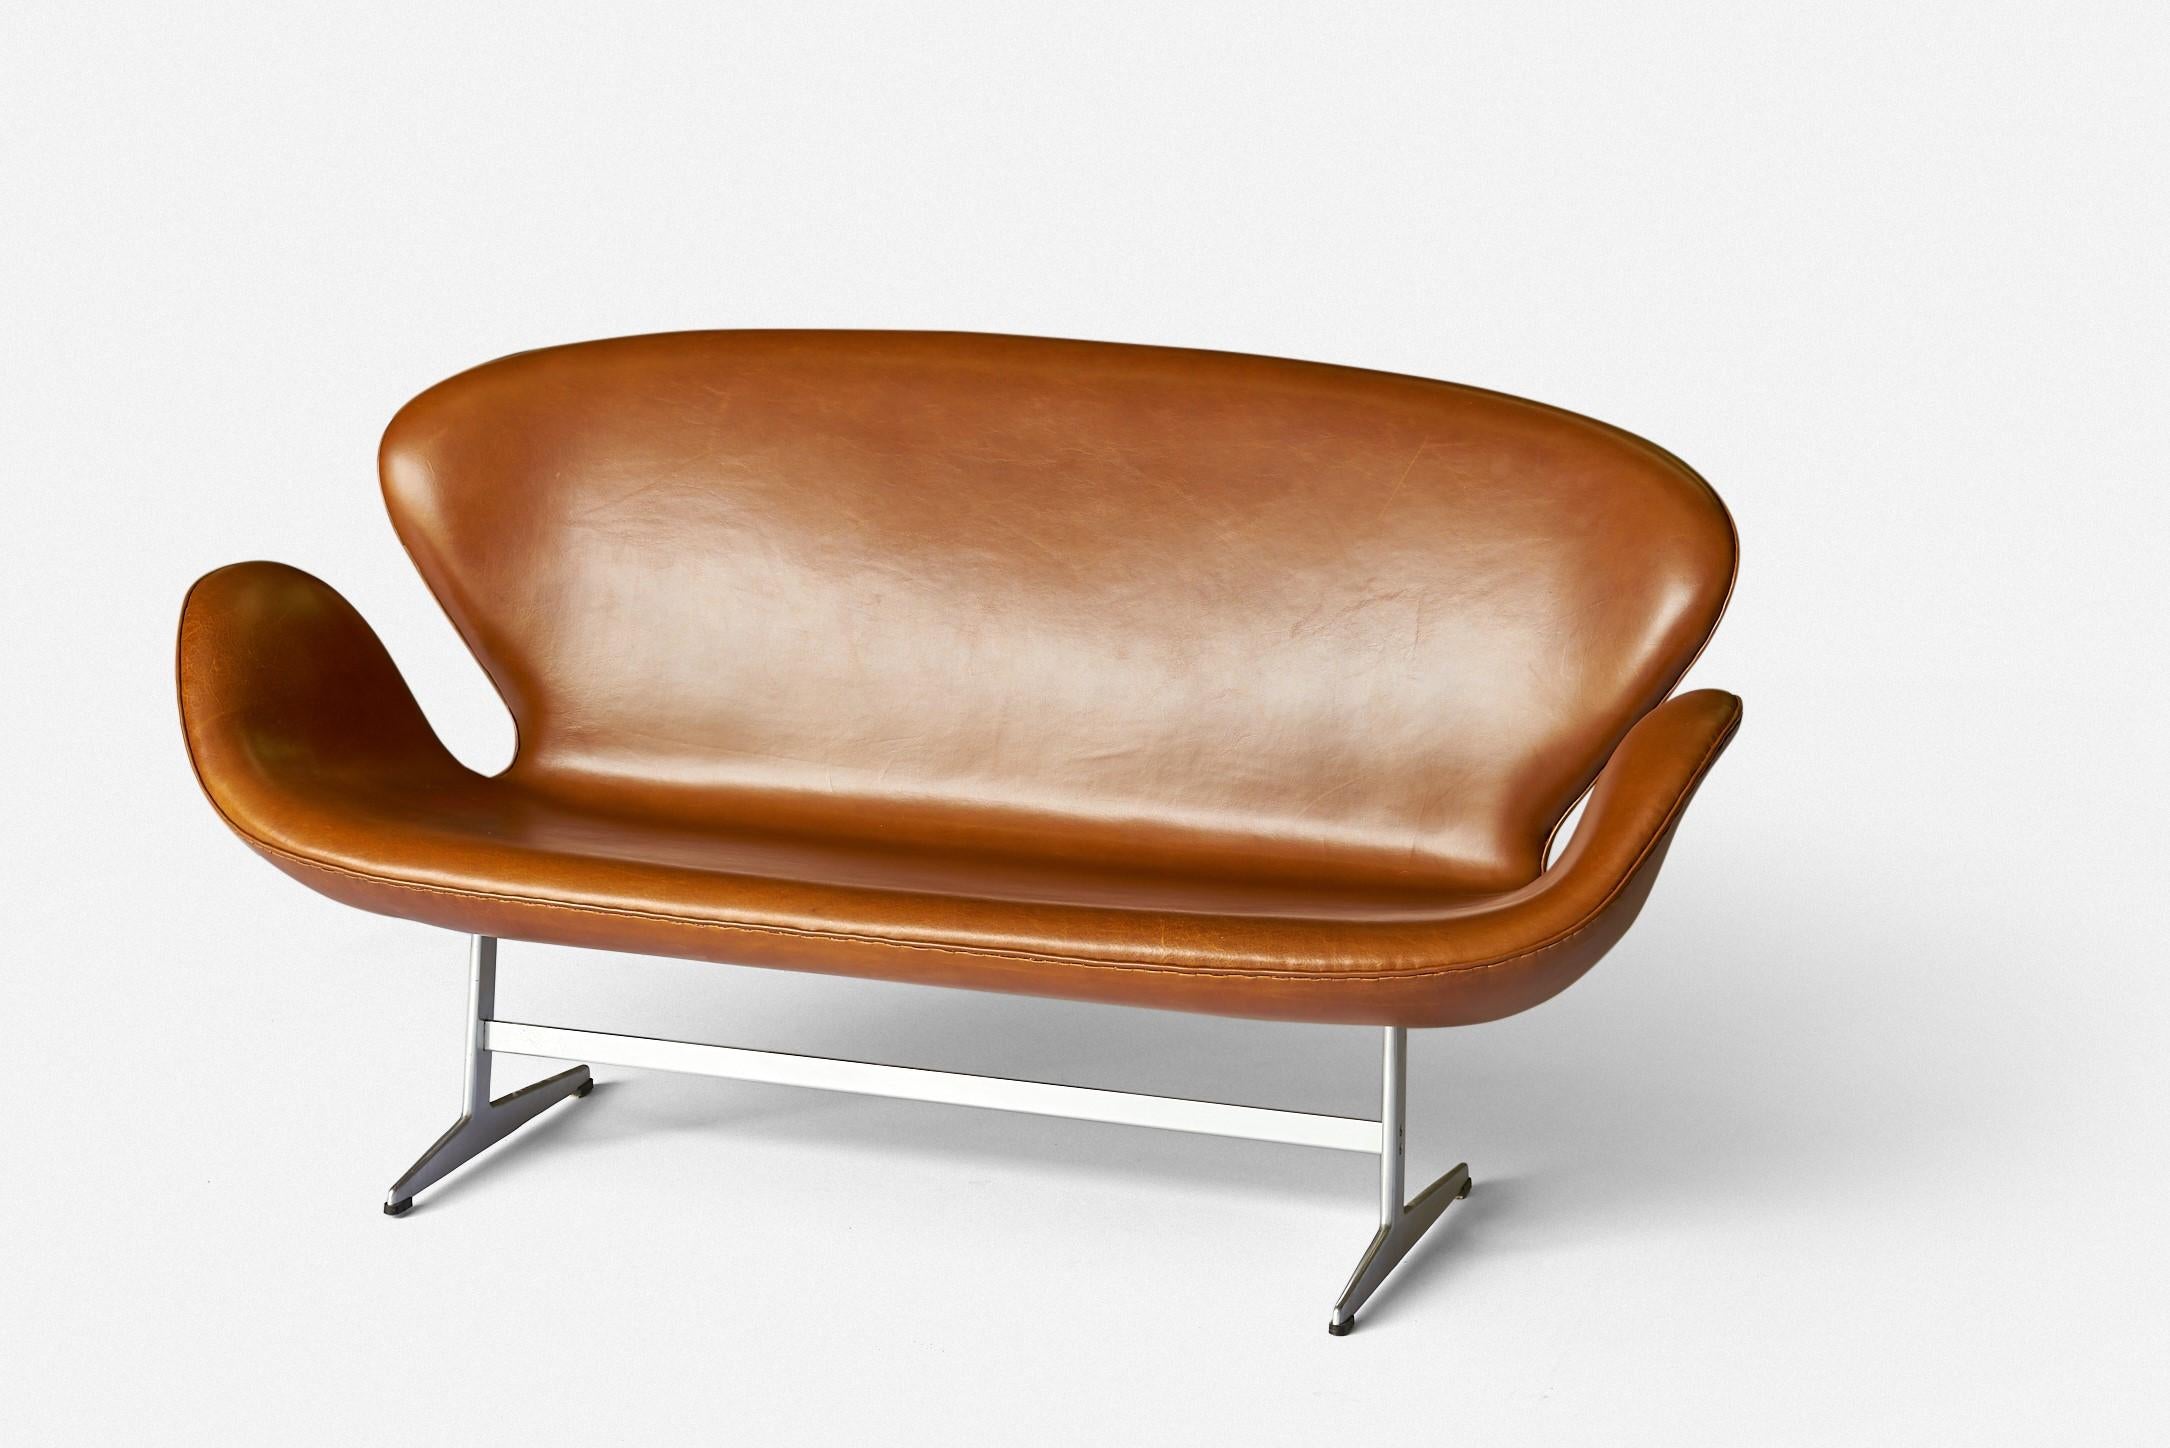 Arne Jacobsen
Swan settee, model 3321
Fritz Hansen
Denmark, 1958
leather, aluminum, plastic

Vintage Arne Jacobsen swan settee.